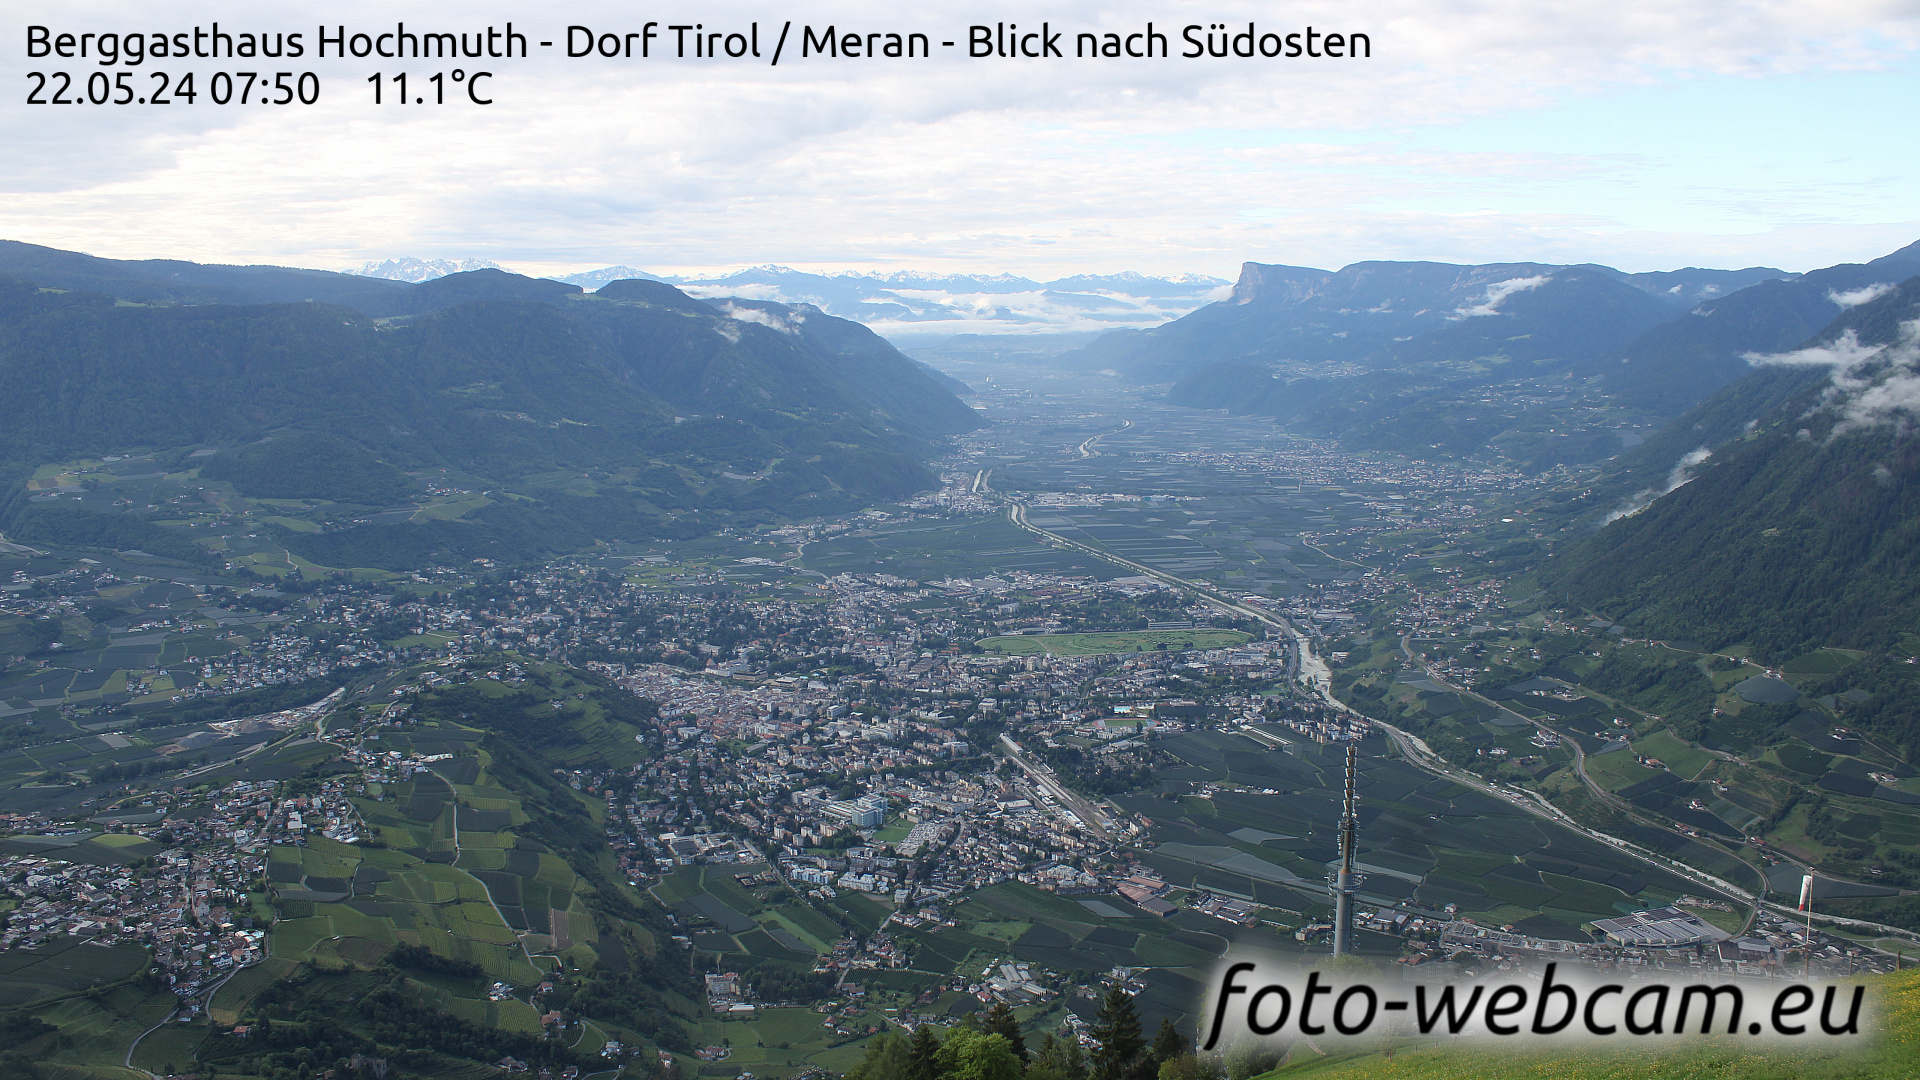 Dorf Tirol Tir. 07:56